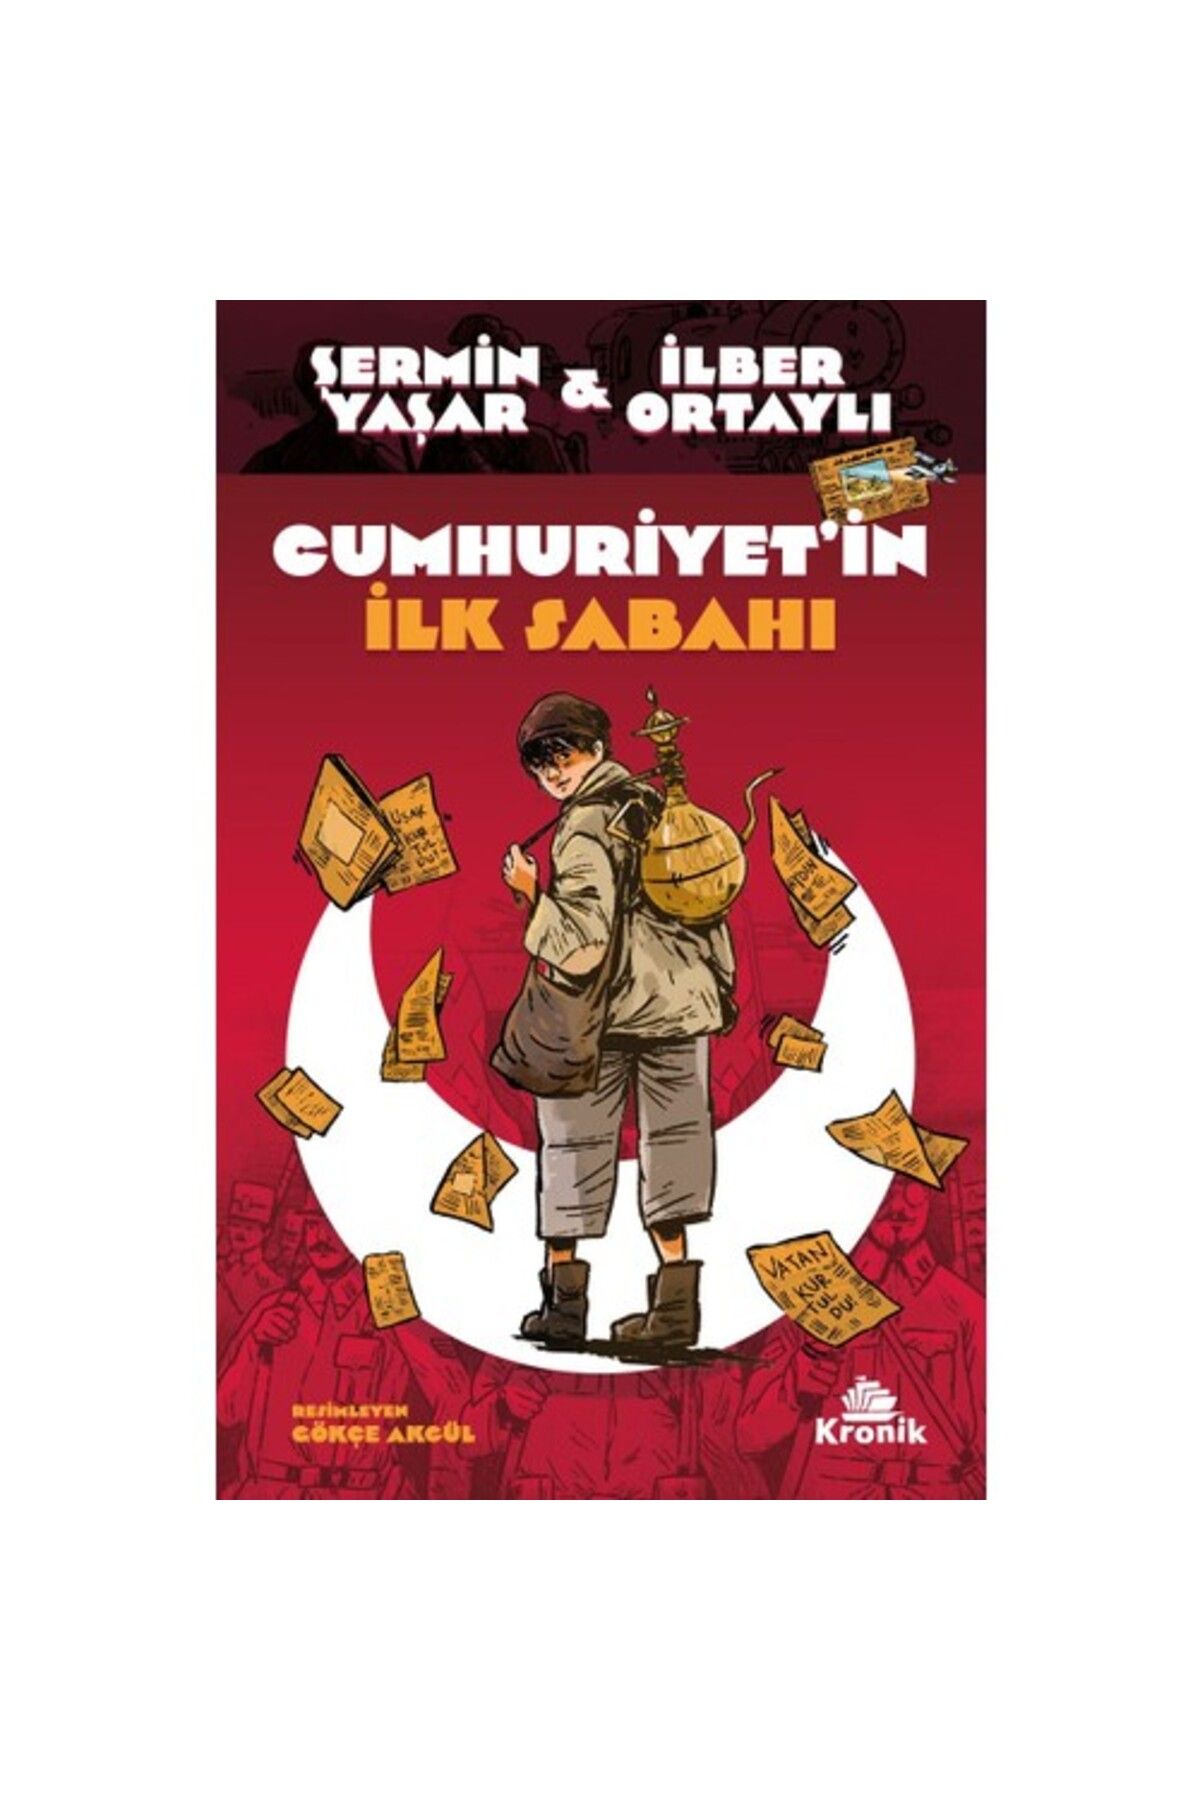 Kronik Kitap Cumhuriyet’in Ilk Sabahı Şermin Yaşar & Ilber Ortaylı